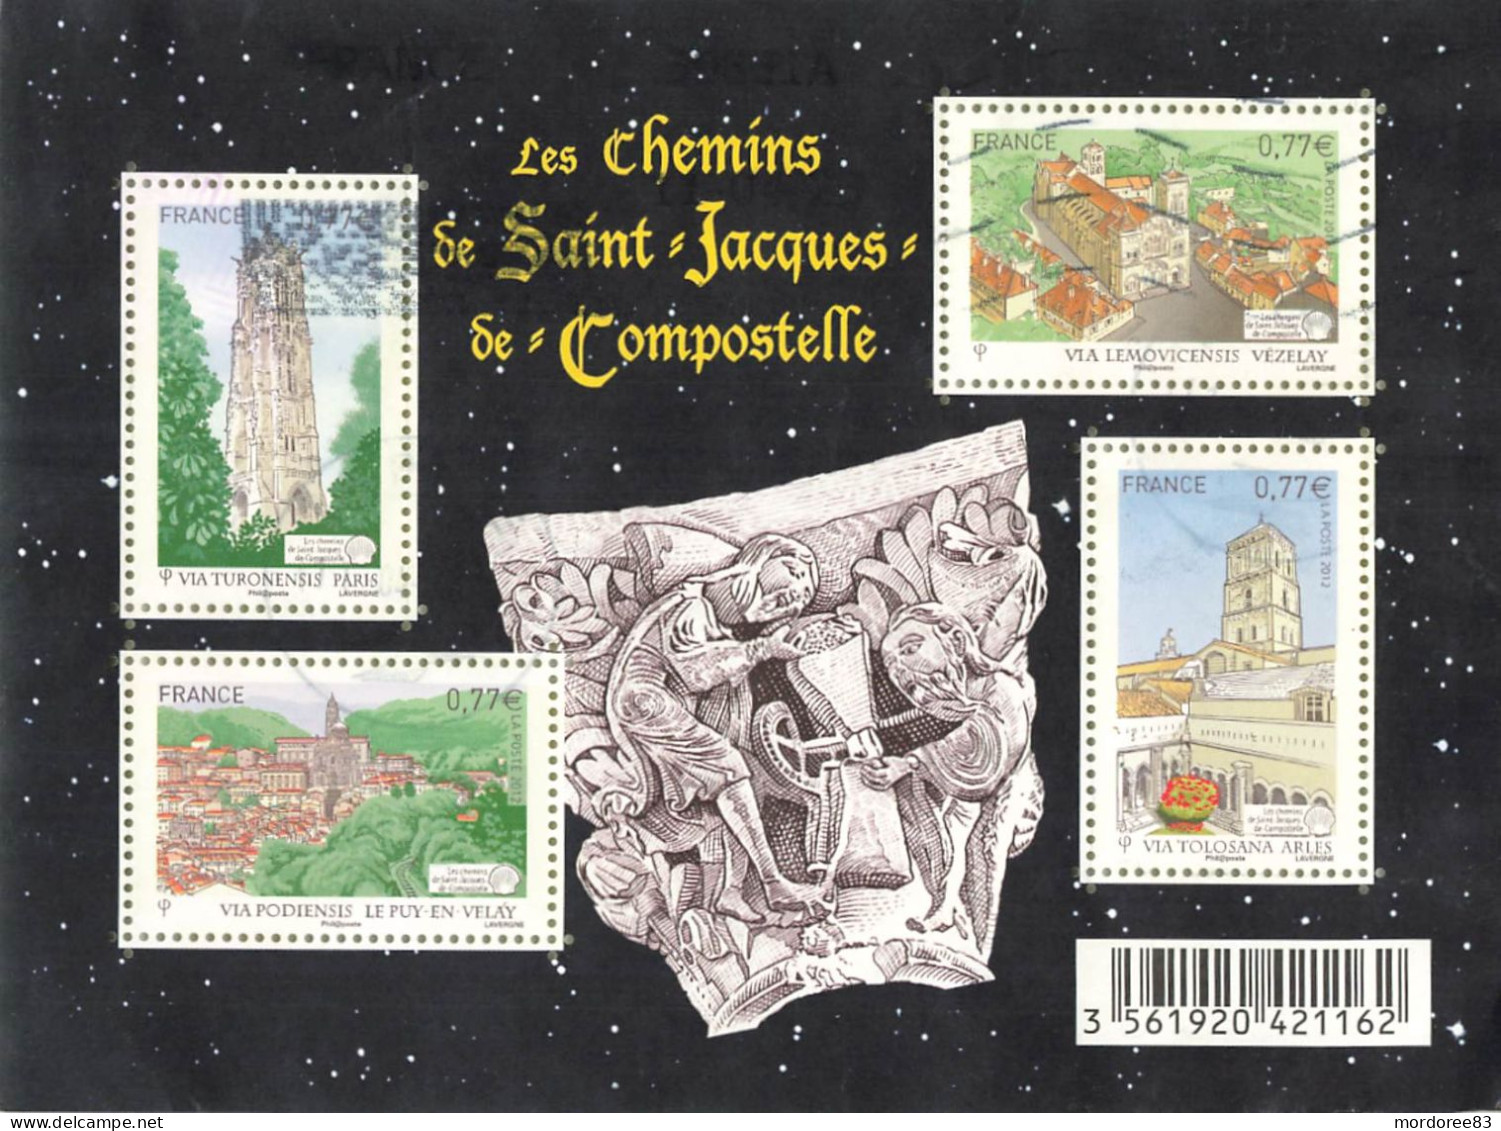 FRANCE 2012 BLOC OBLITERE LES CHEMINS DE SAINT JACQUES DE COMPOSTELLE - F 4641 - - Gebraucht